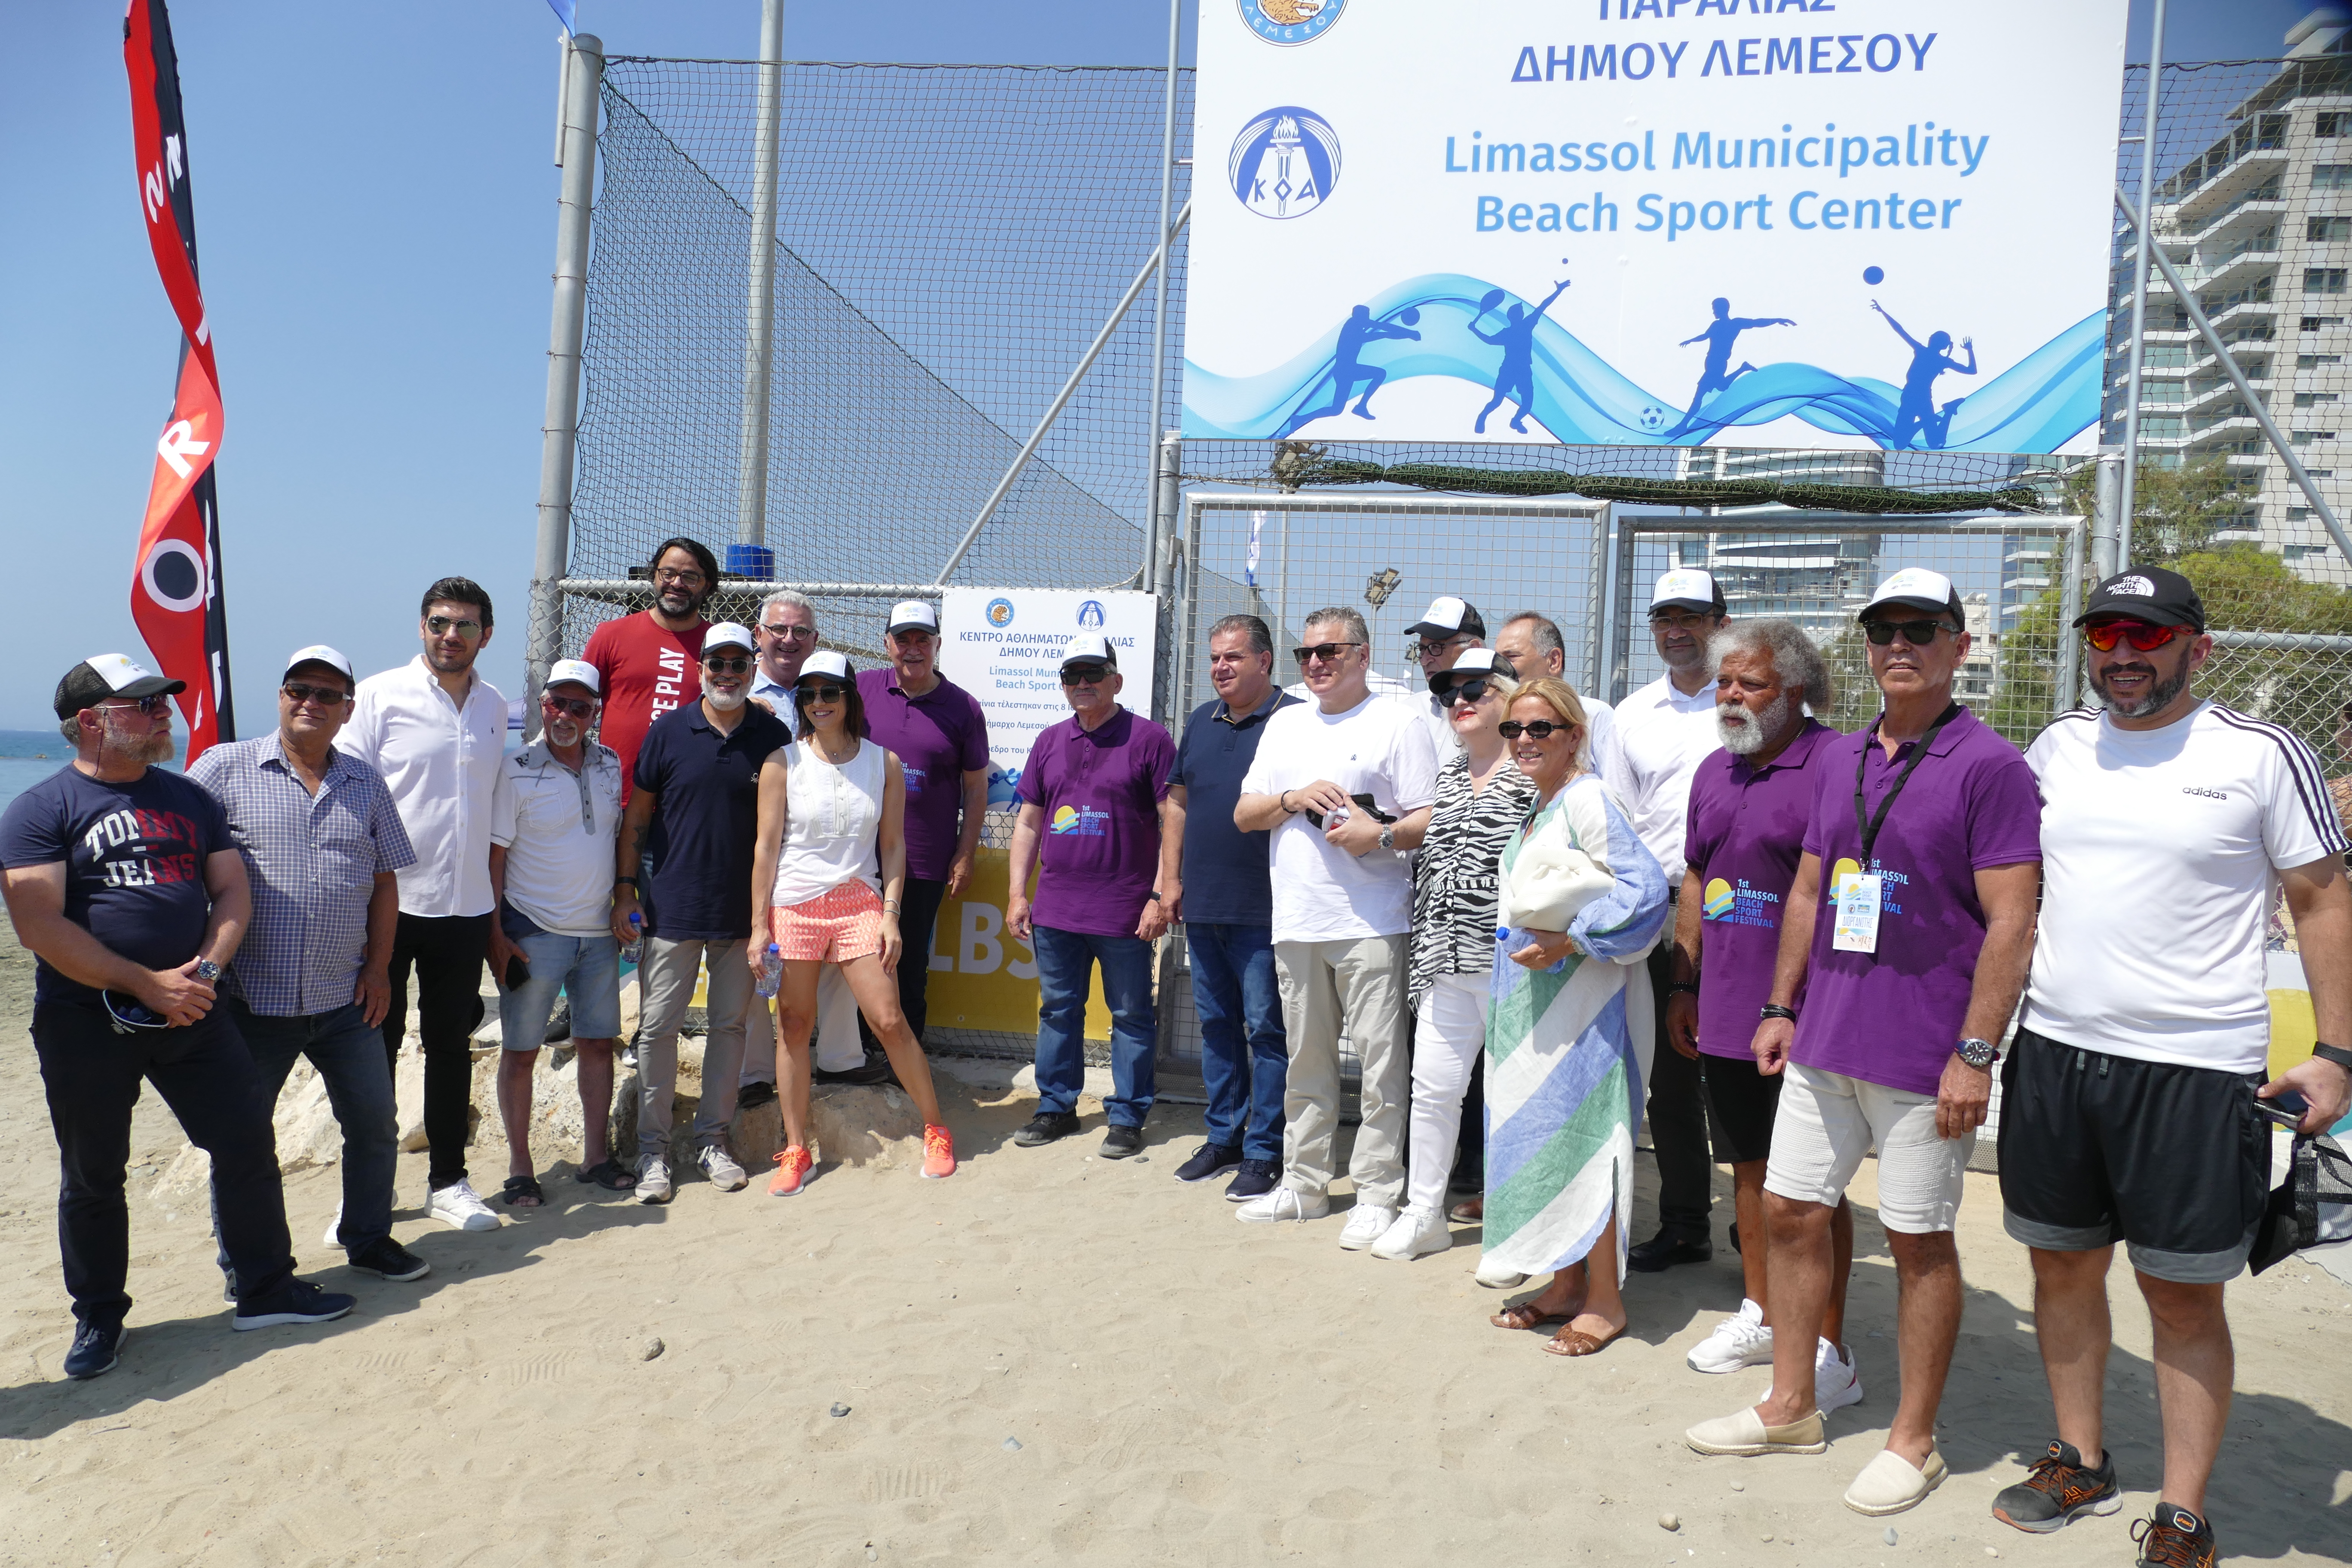 Δήμος Λεμεσού και ΚΟΑ παρέδωσαν στο κοινό σύγχρονες υποδομές αθλημάτων  παραλίας